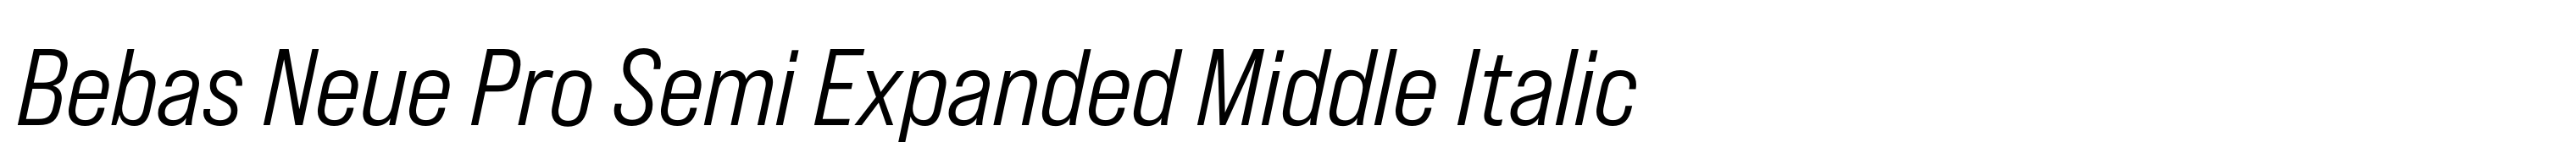 Bebas Neue Pro Semi Expanded Middle Italic